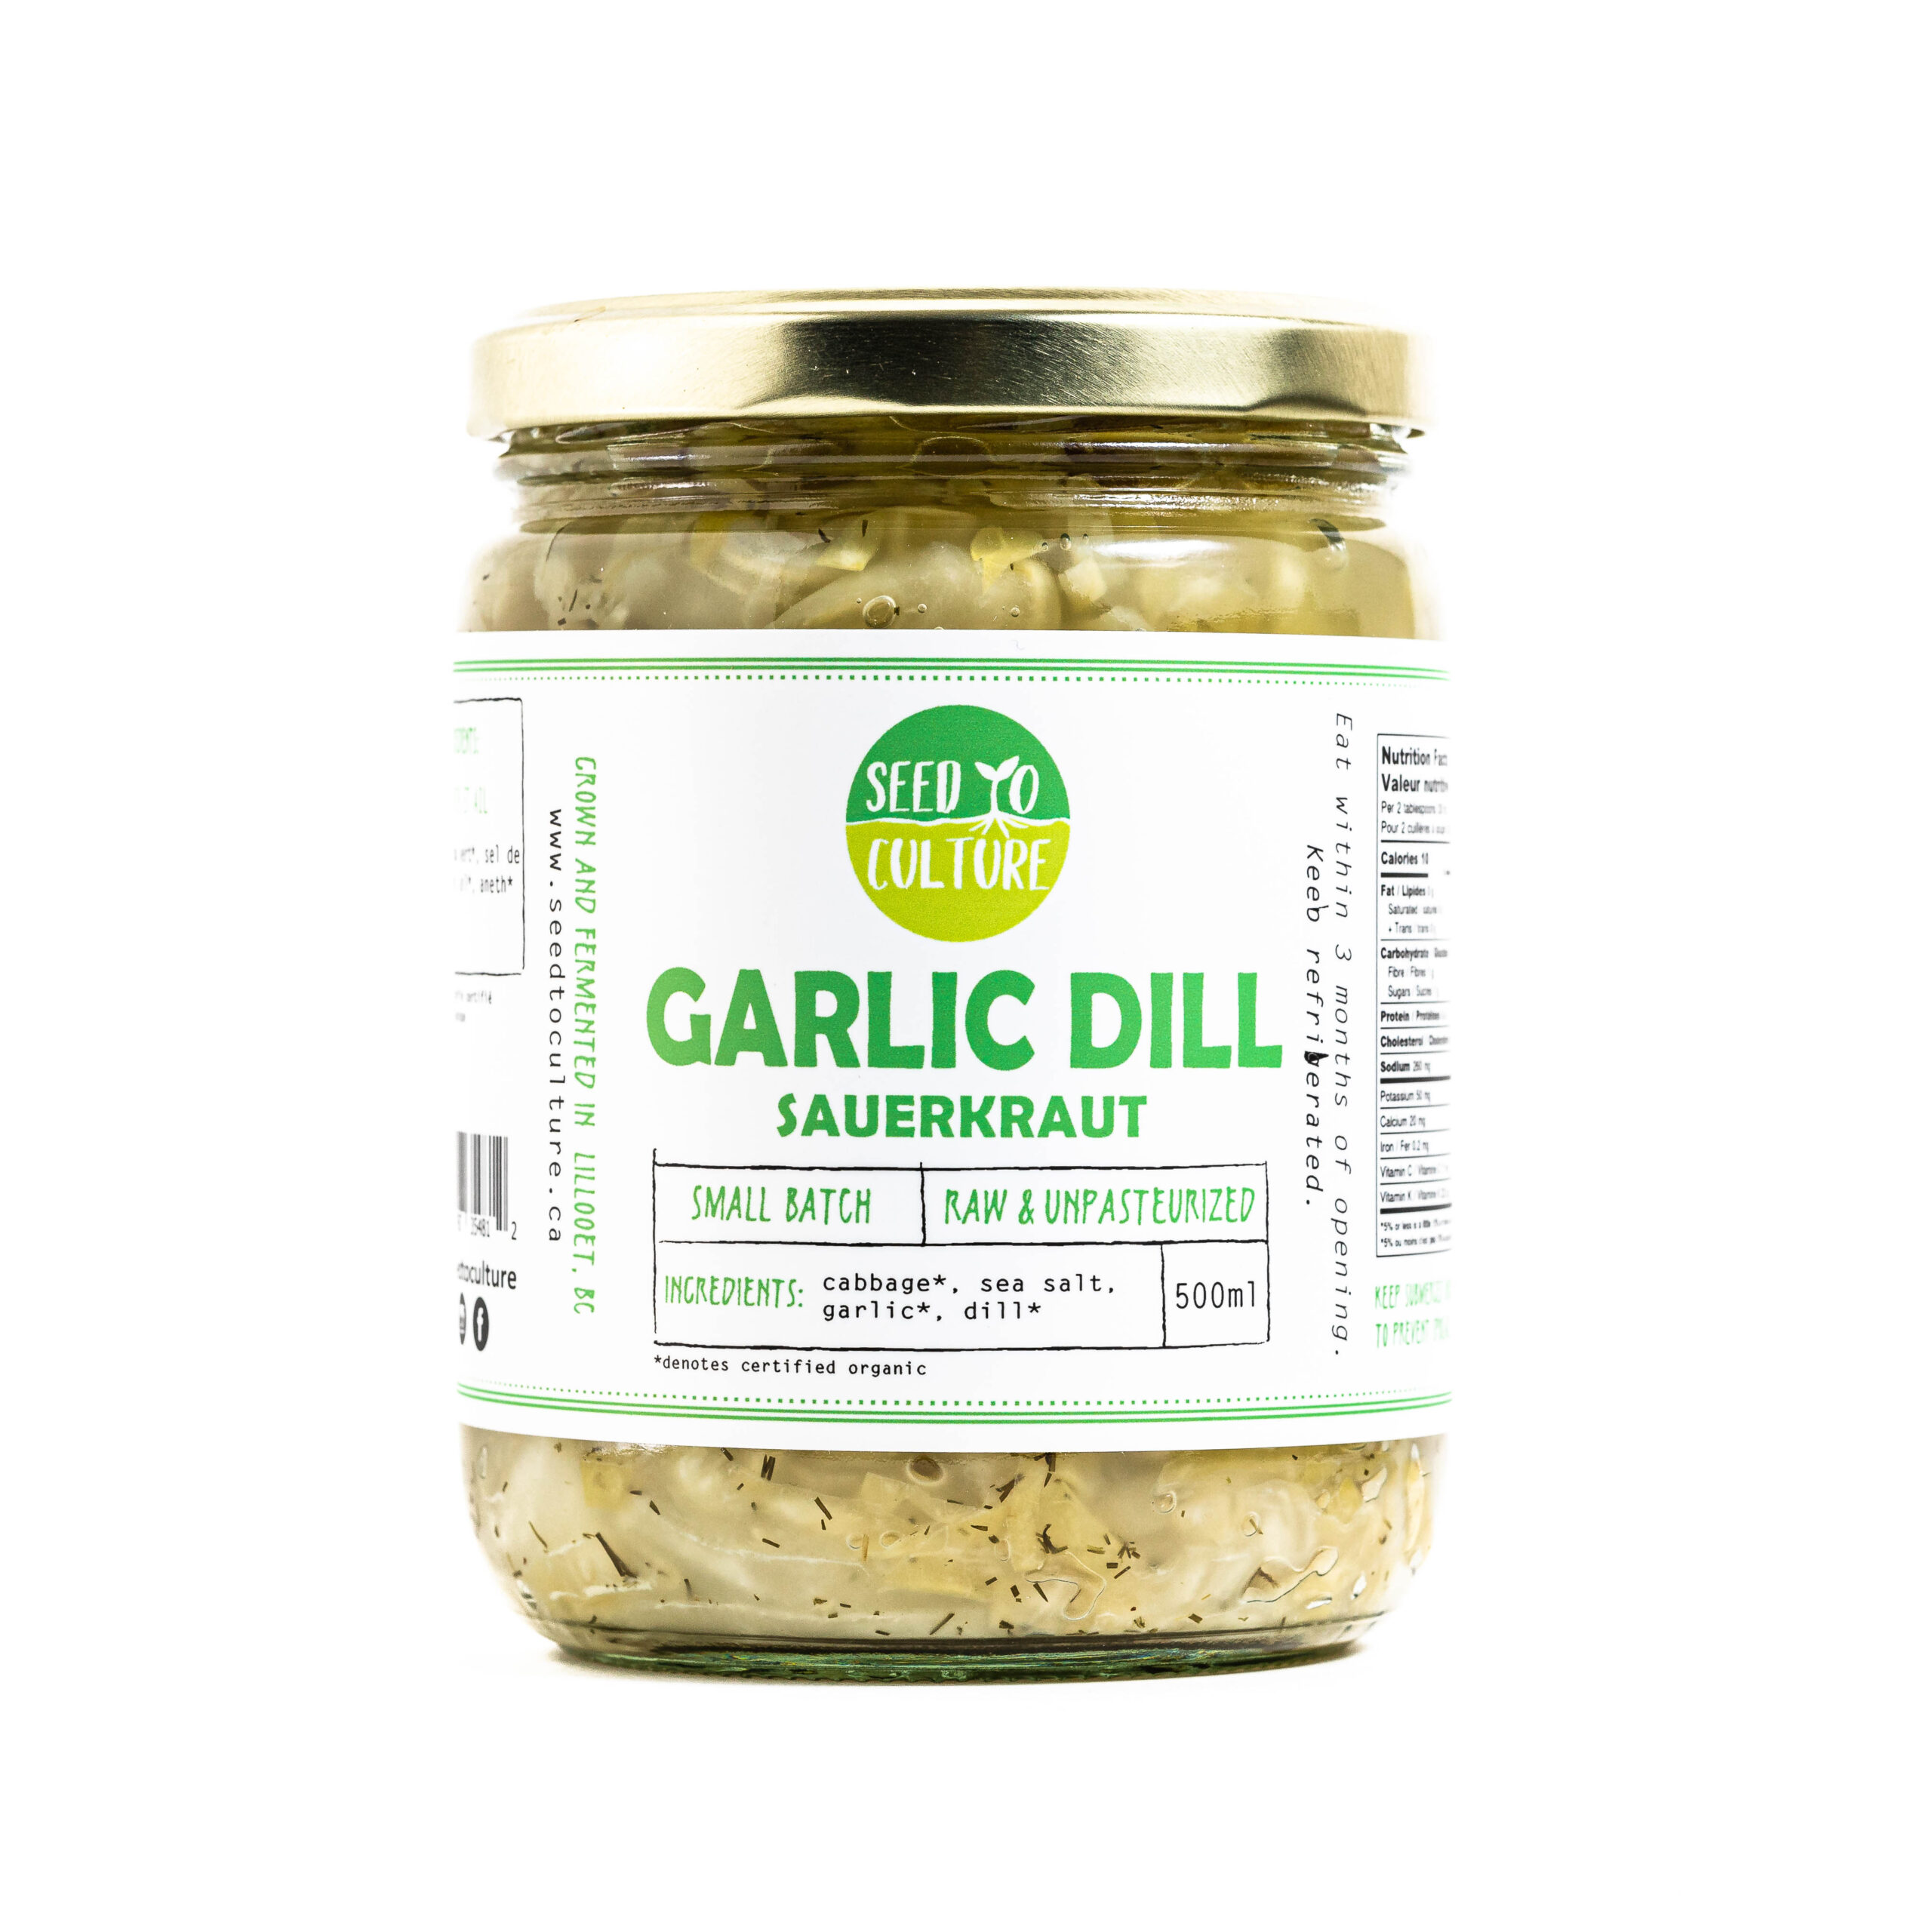 Garlic Dill Sauerkraut